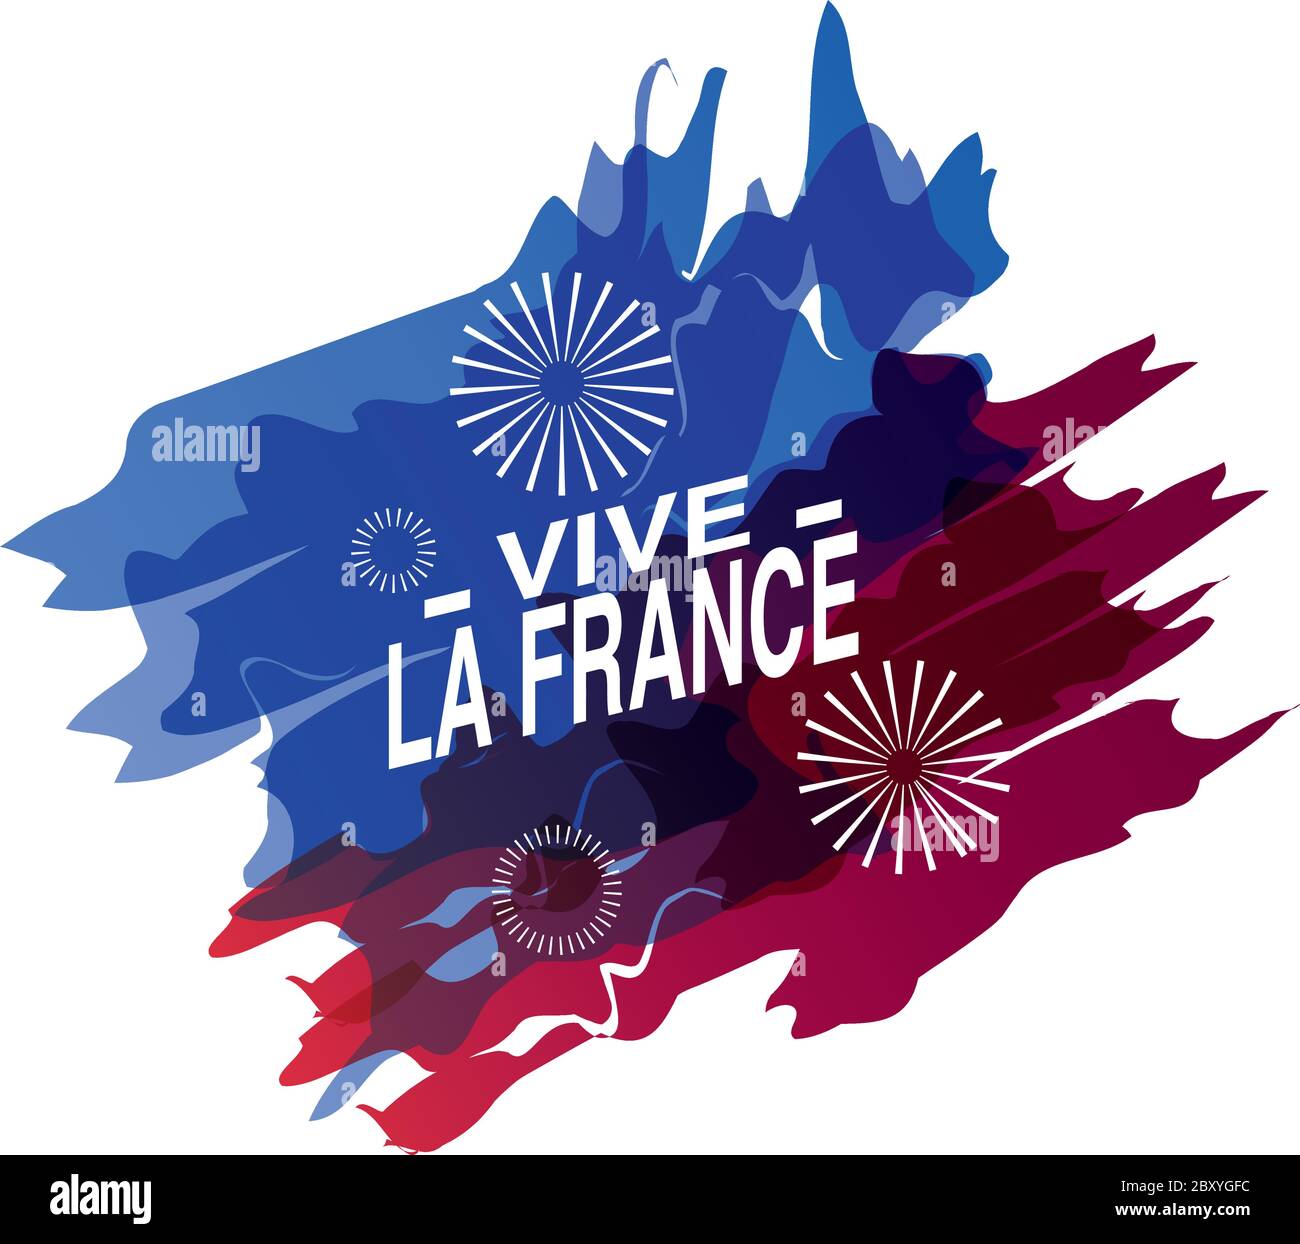 Banner für den französischen Nationalfeiertag, Label vive la france Vektor Illustration Design Stock Vektor